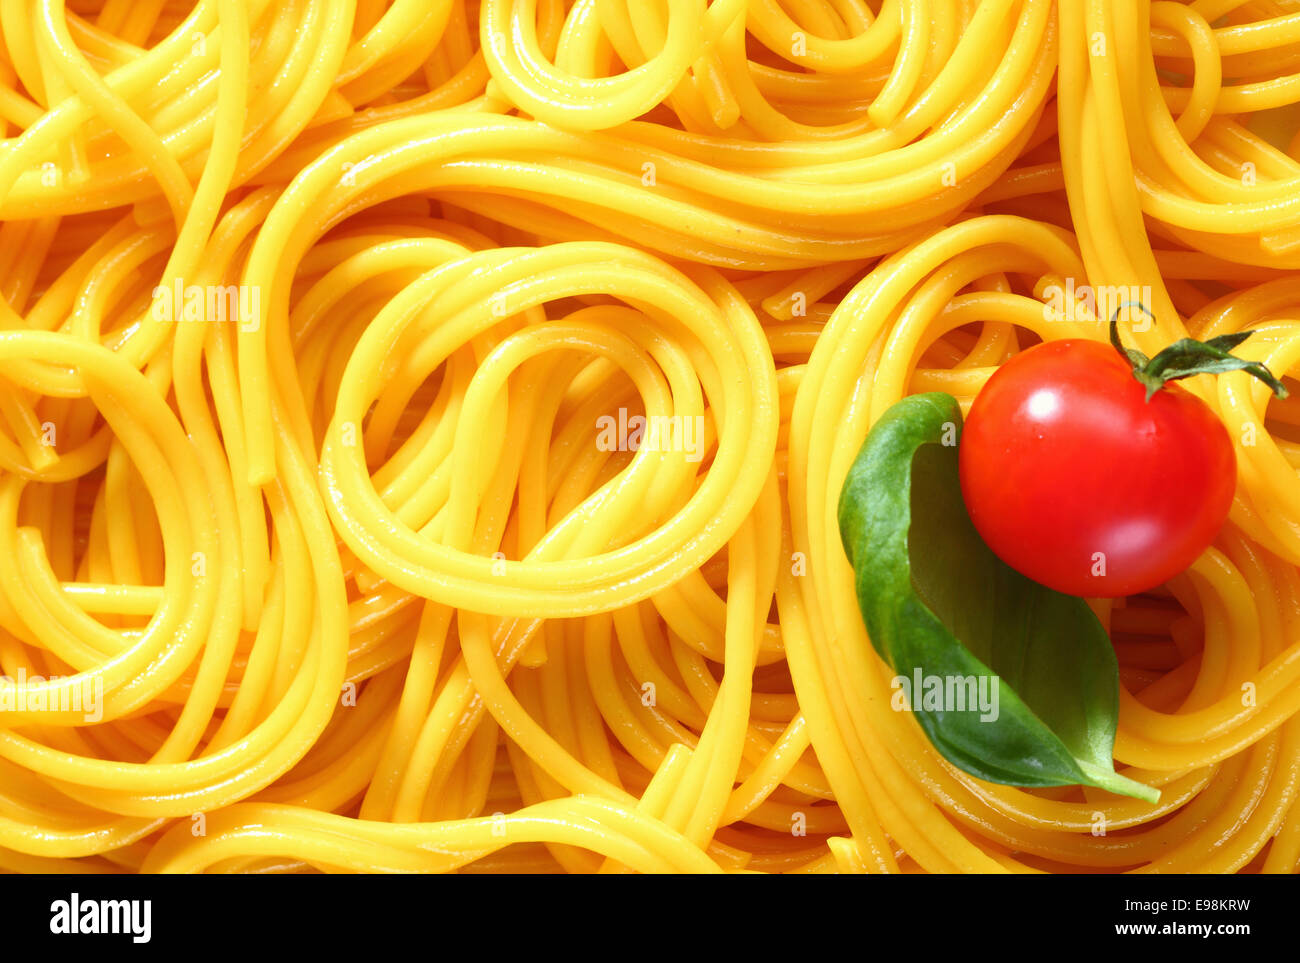 Gros plan du spaghetti fraîchement bouillie lovés dans des motifs aléatoires pour un arrière-plan intéressant. Avec le basilic et tomate Banque D'Images